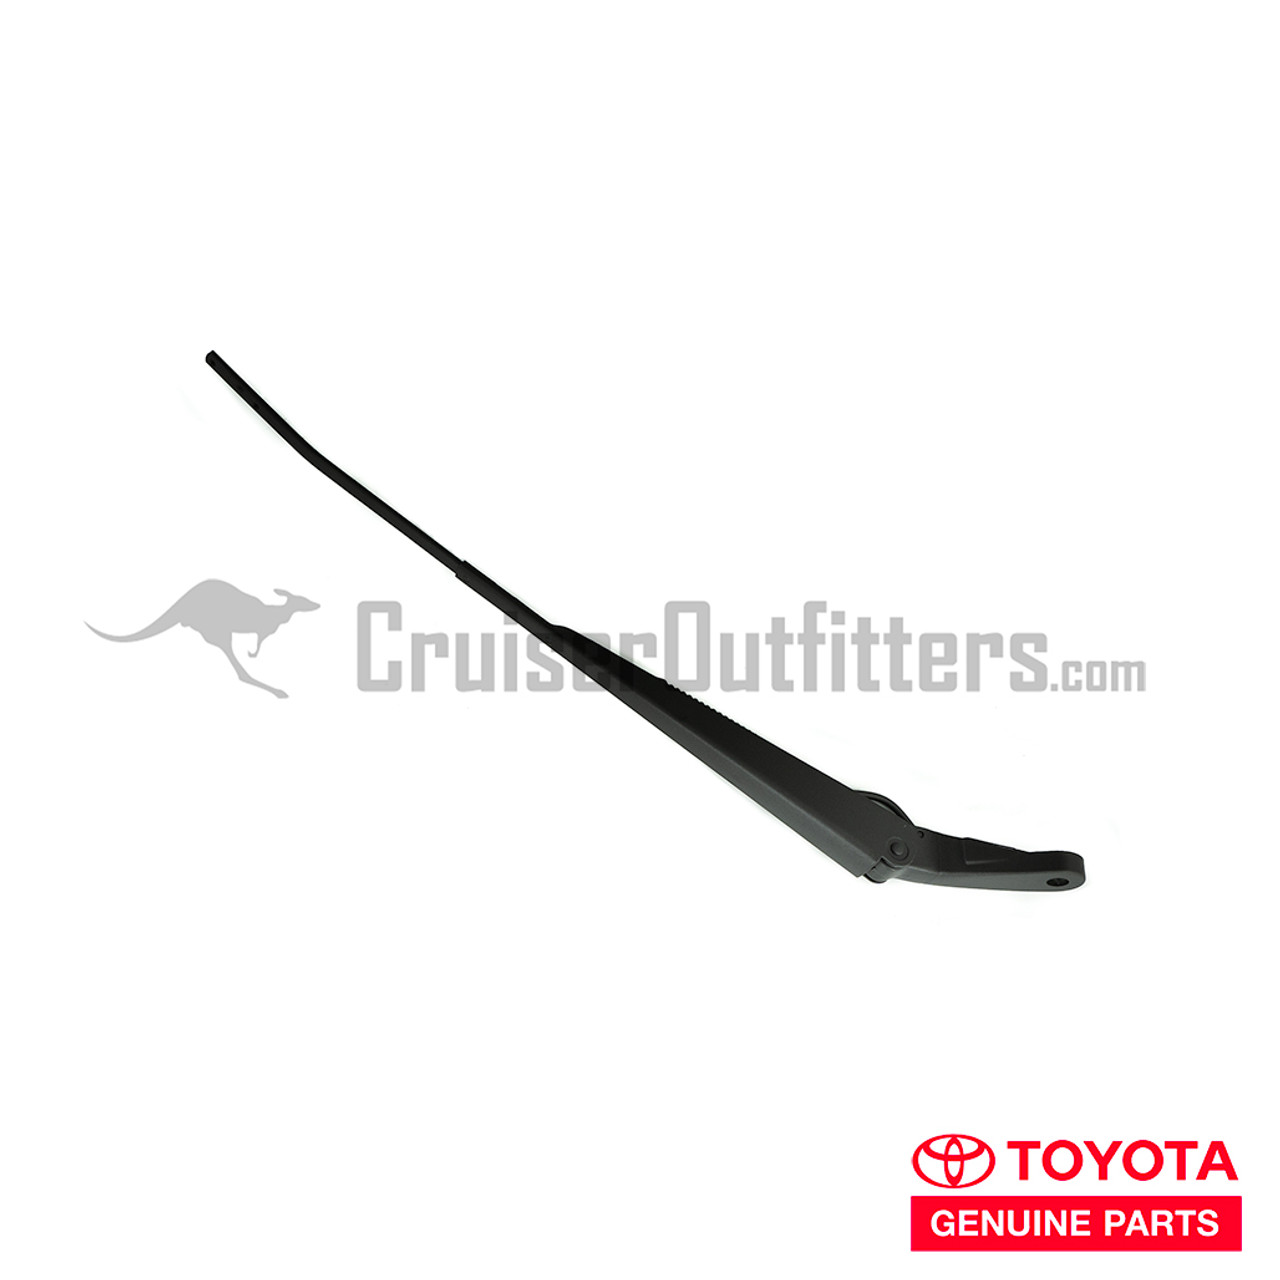 Windshield Wiper Arm - OEM Toyota - Fits 6x Series RHD Right (WIPRHD6XR)